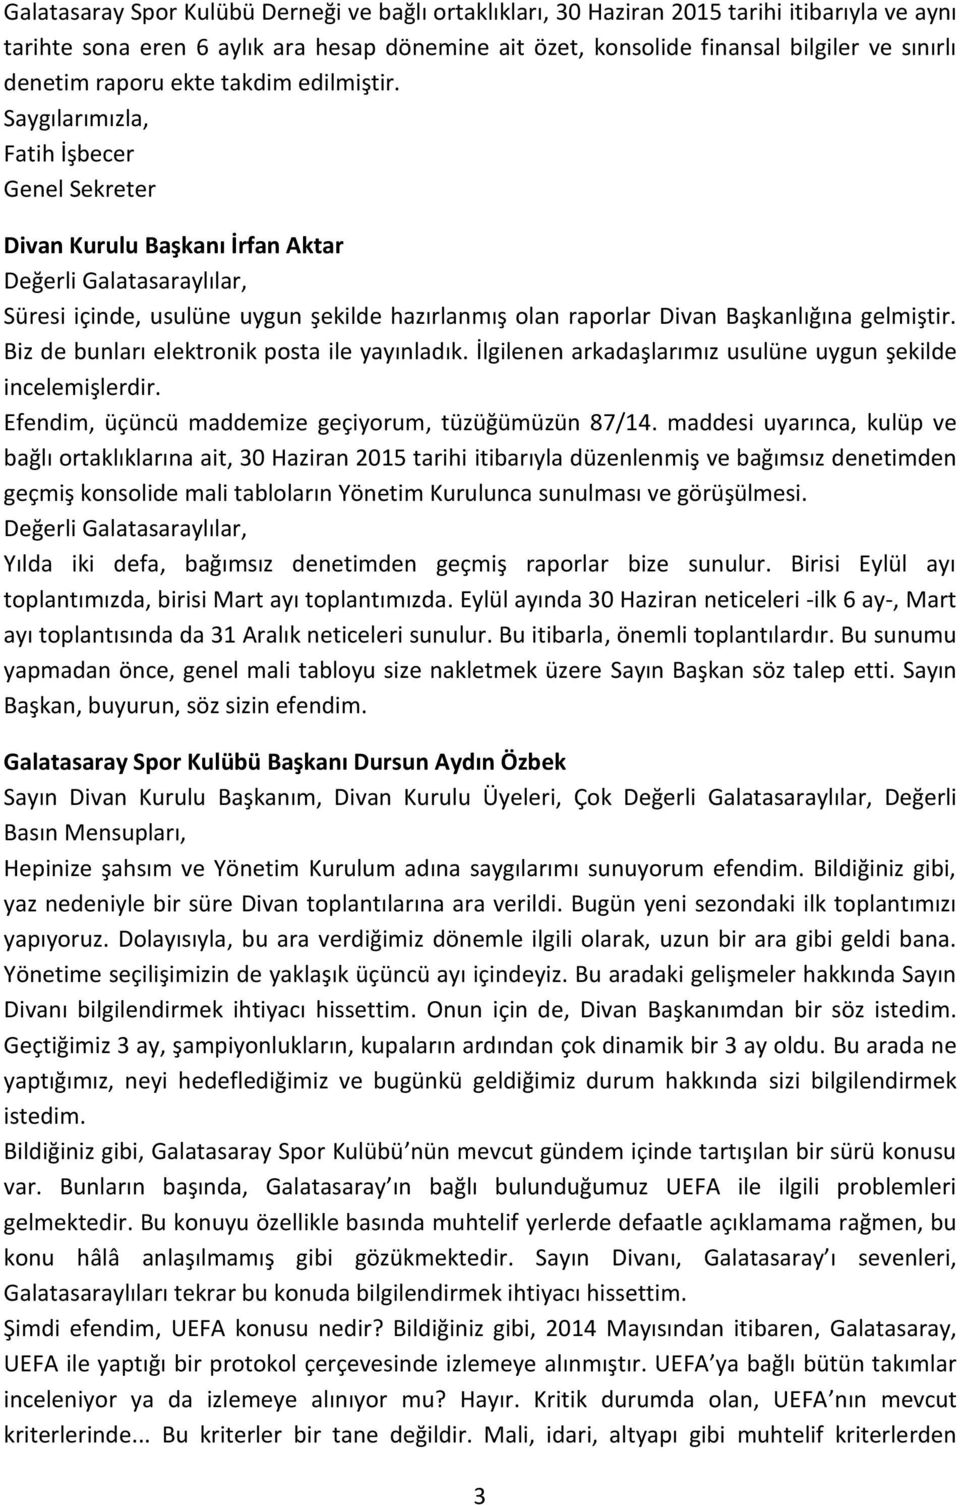 Saygılarımızla, Fatih İşbecer Genel Sekreter Divan Kurulu Başkanı İrfan Aktar Değerli Galatasaraylılar, Süresi içinde, usulüne uygun şekilde hazırlanmış olan raporlar Divan Başkanlığına gelmiştir.